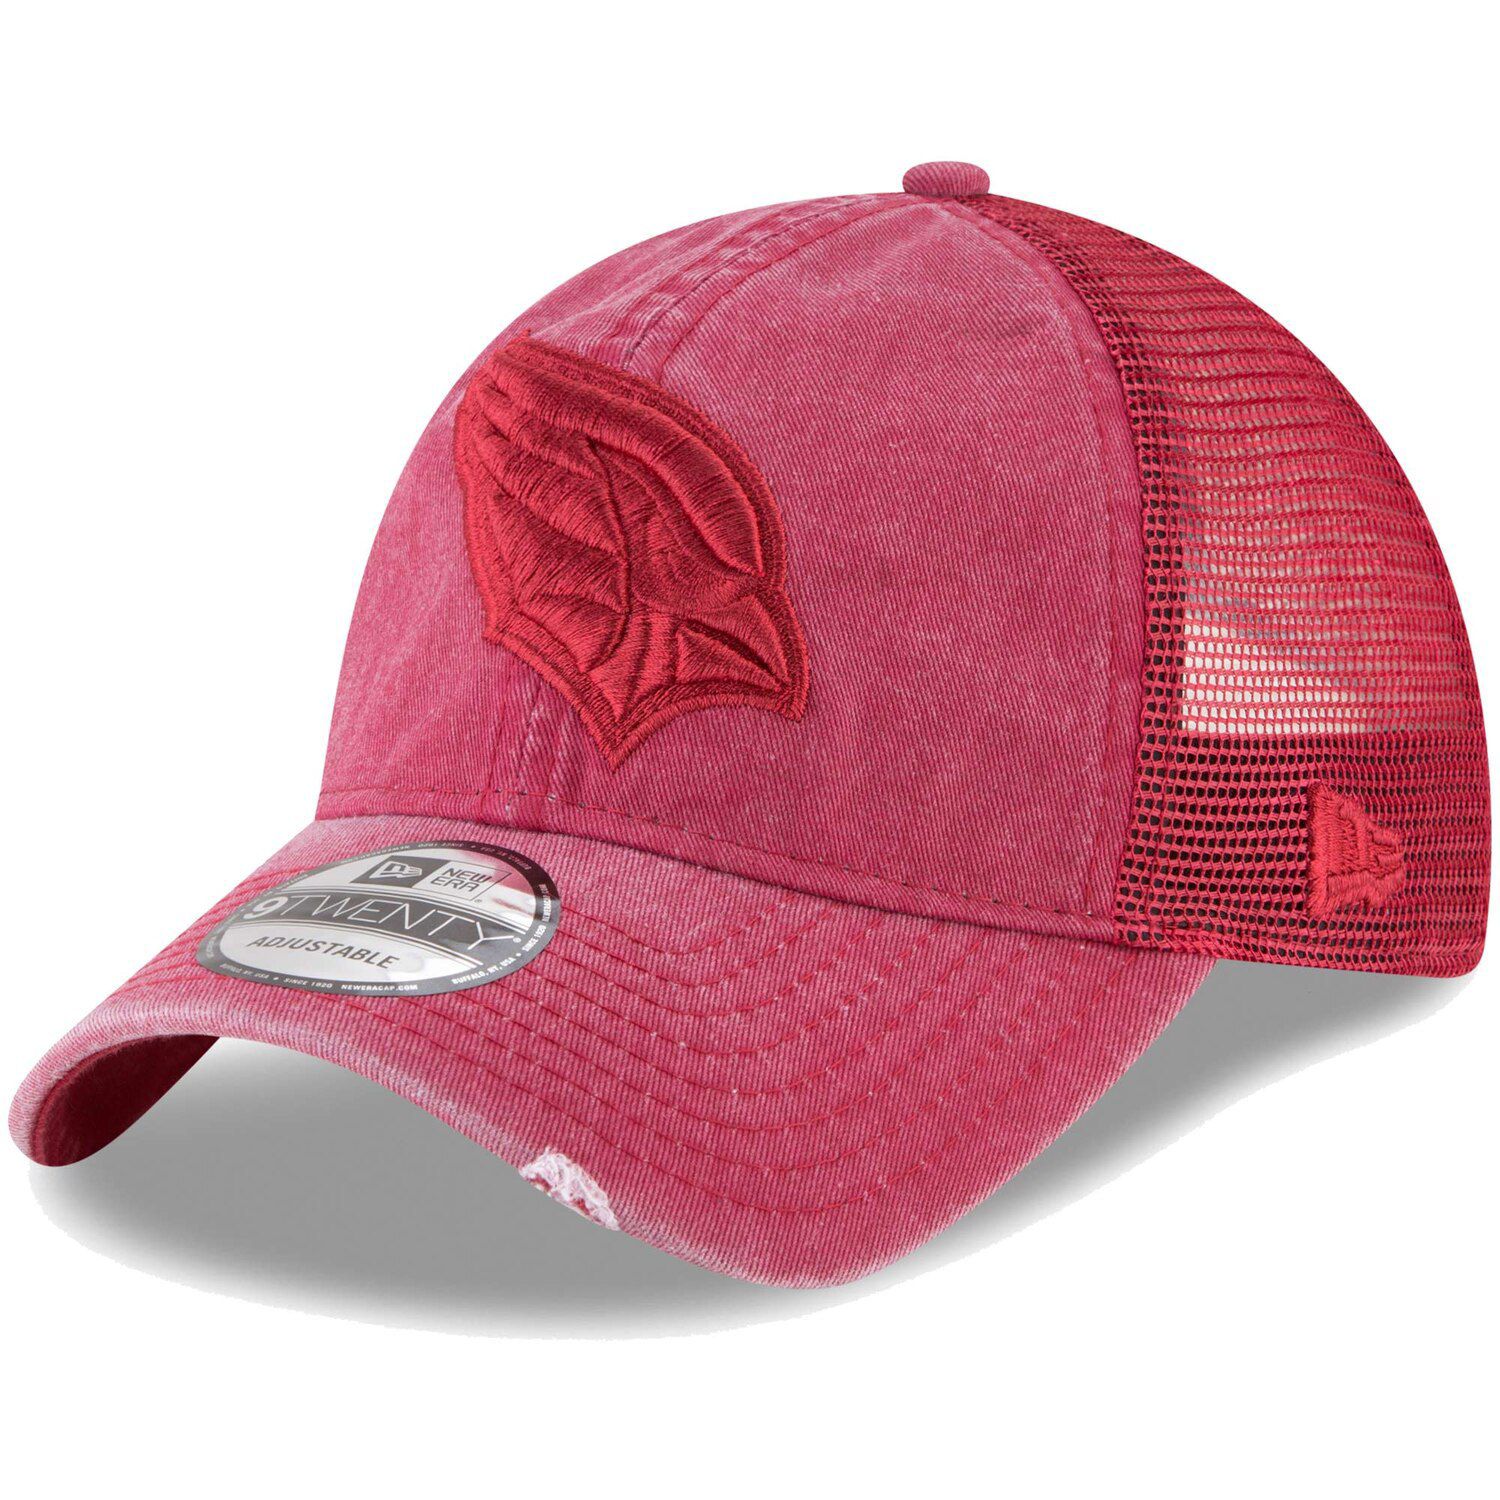 arizona cardinals pink hat